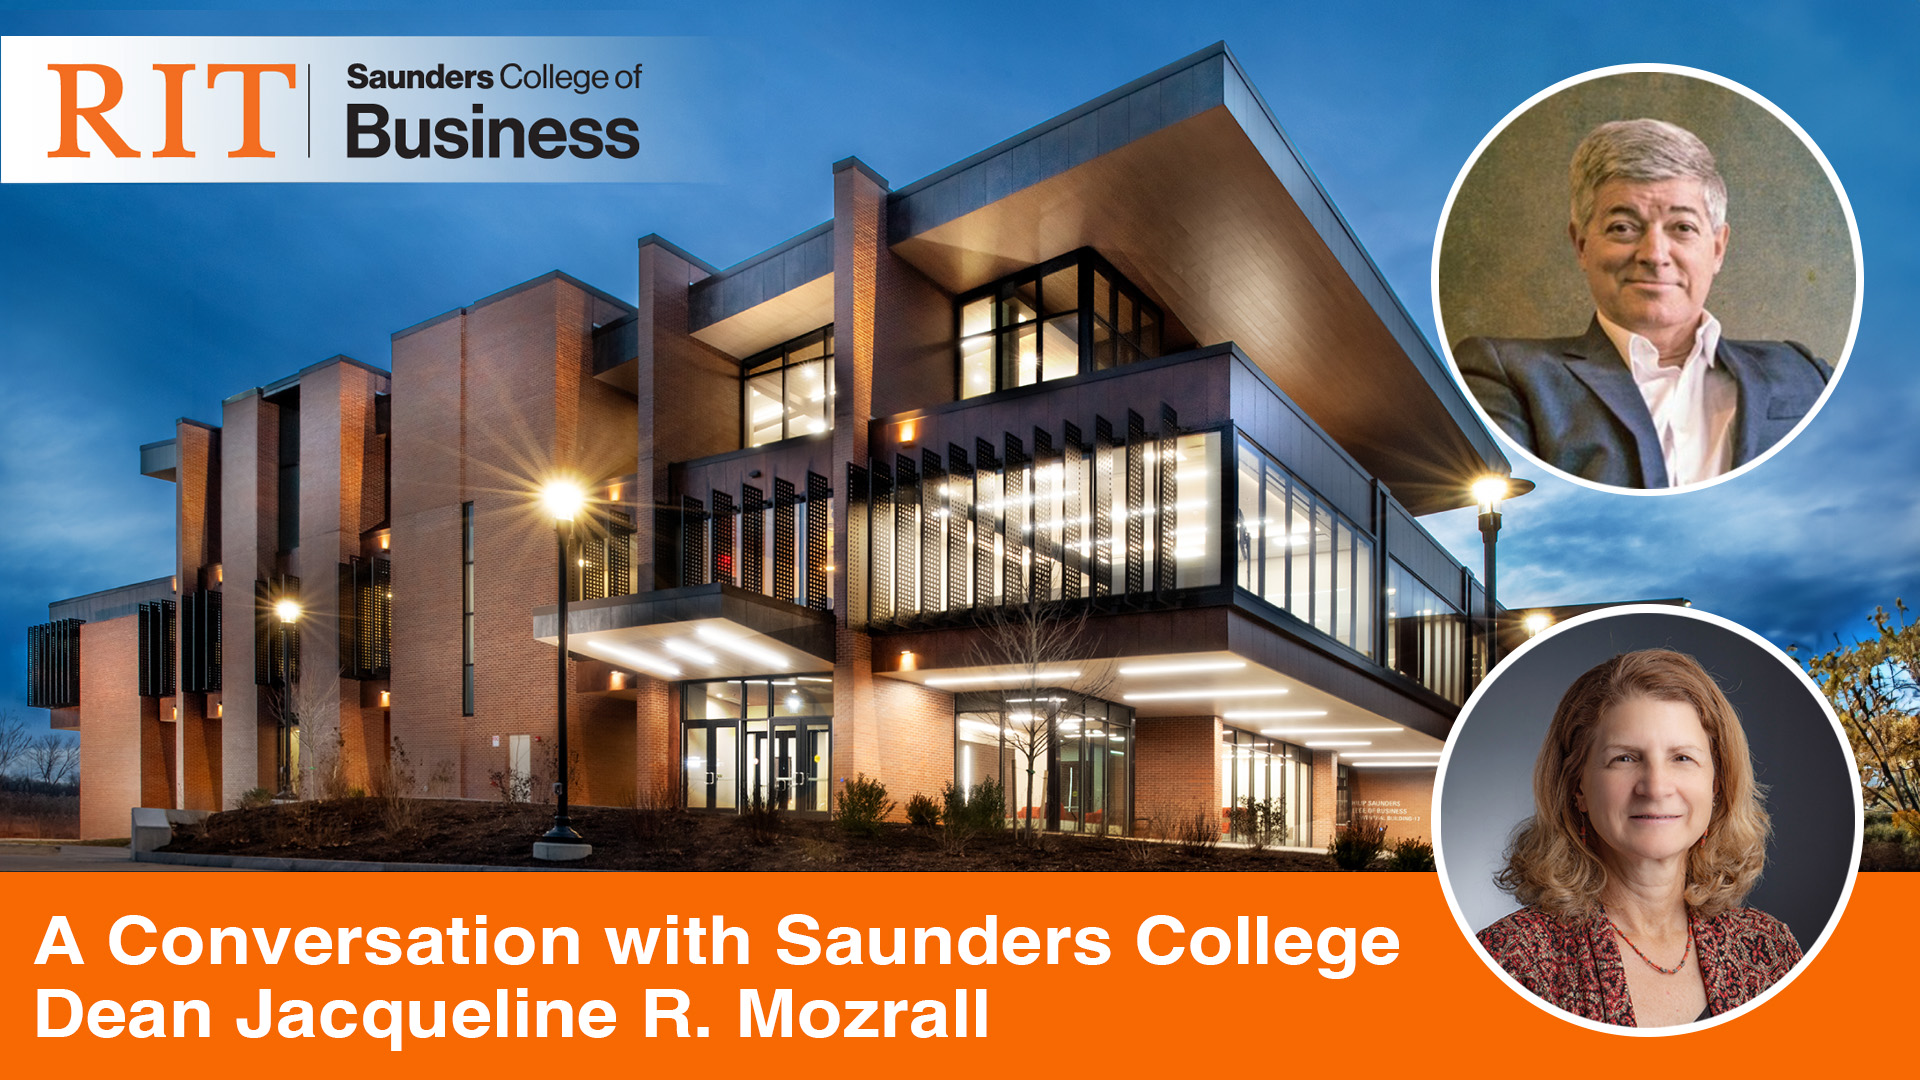 De toekomst van bedrijfsonderwijs: Saunders College of Business bij RIT